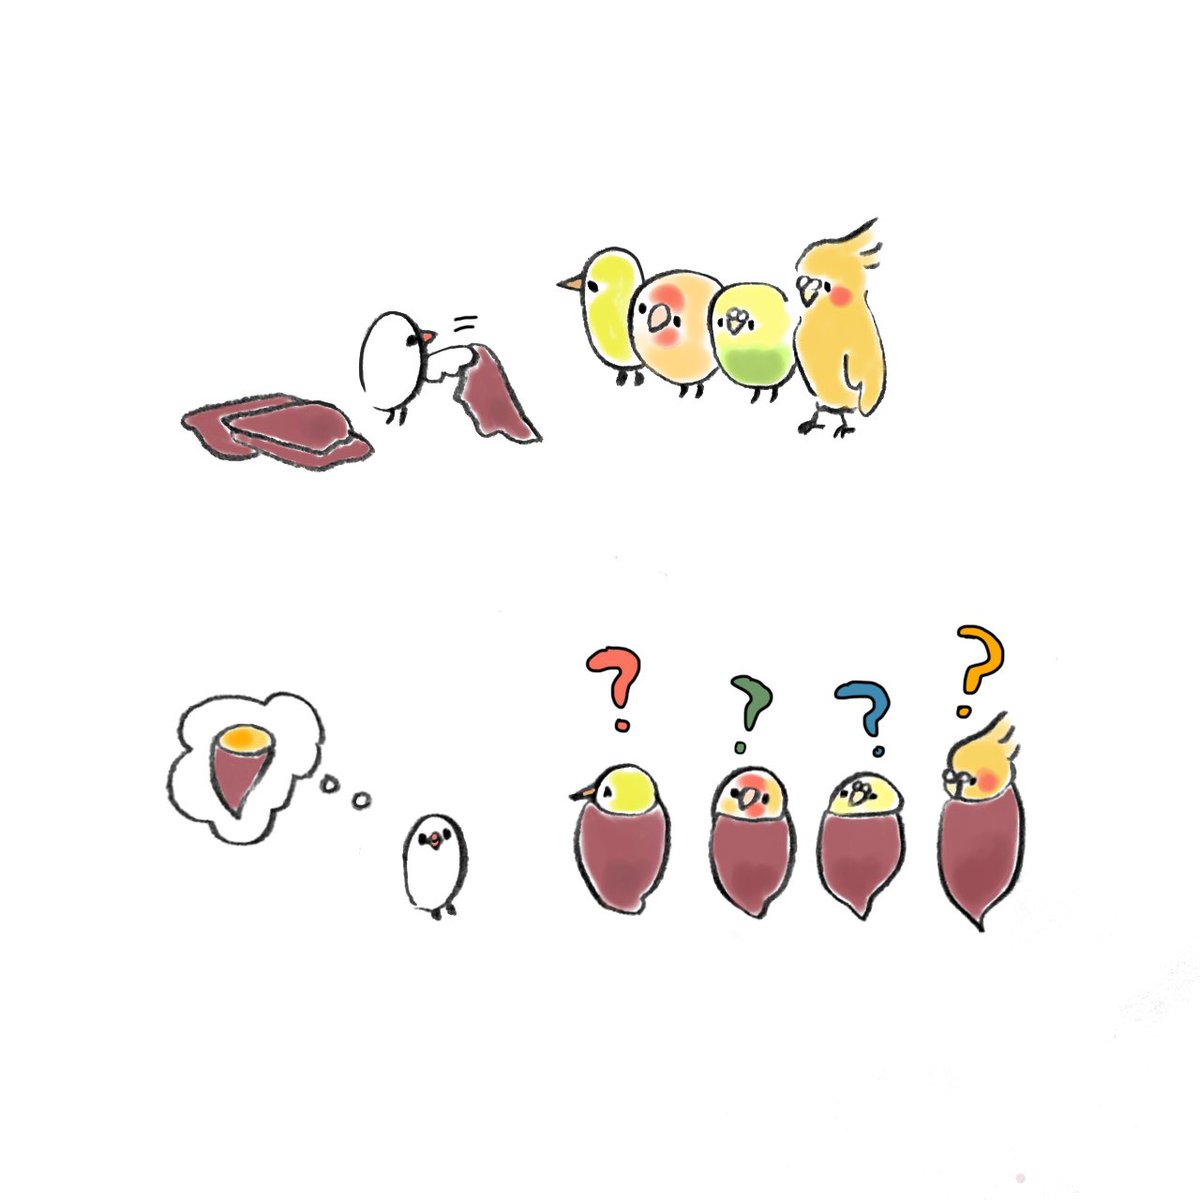 「黄色い子たちと焼き芋ごっこ 」|ゆひろのイラスト